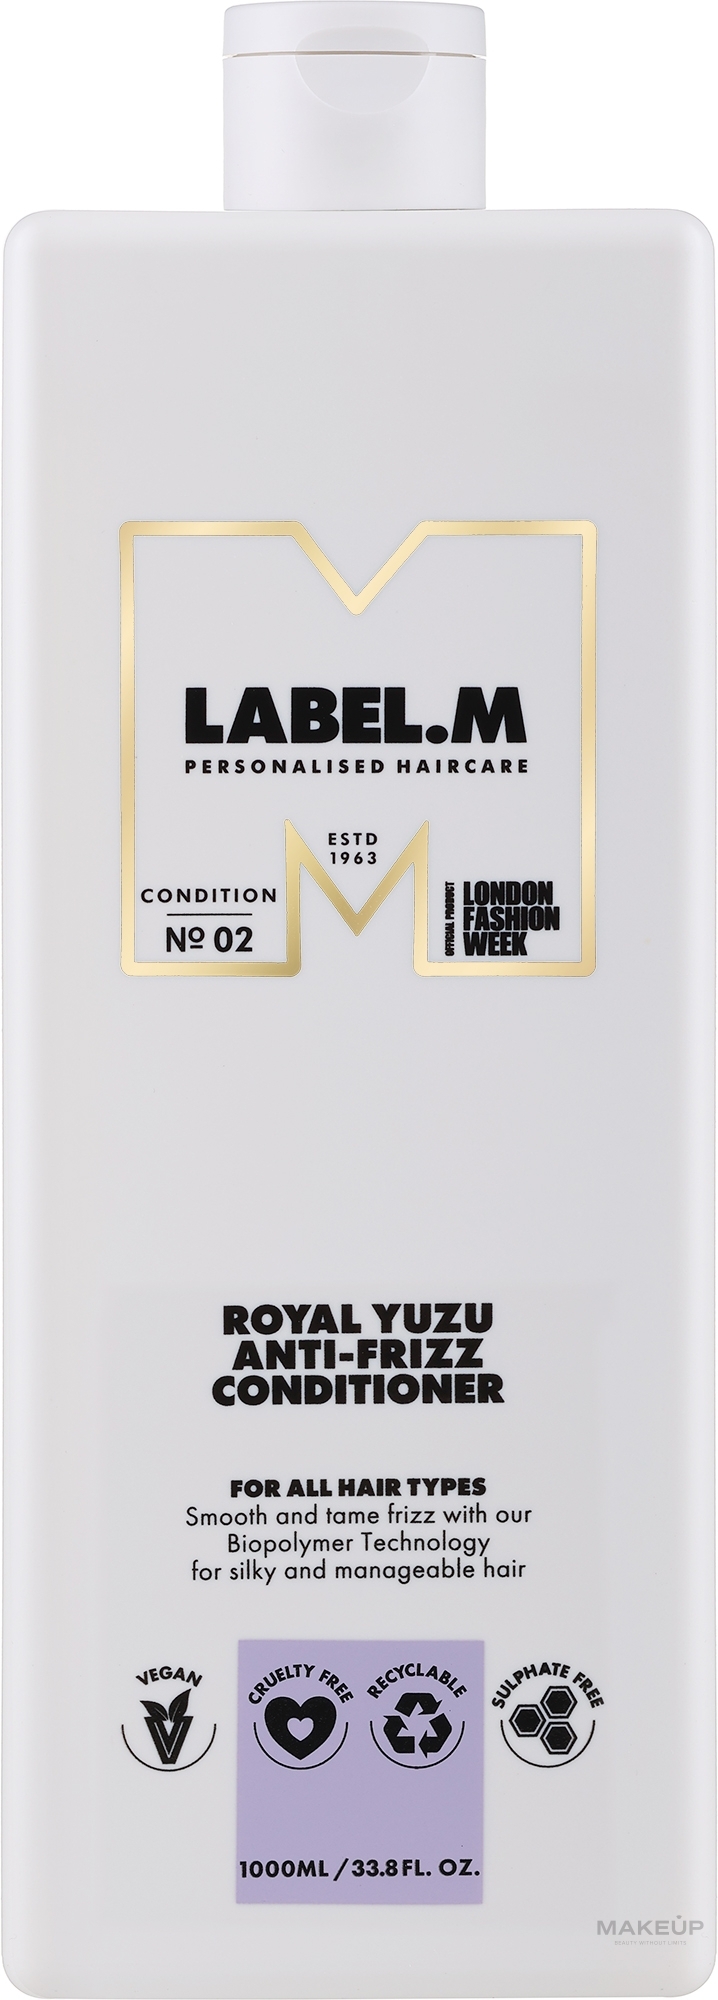 Живильний кондиціонер для виткого волосся - Label.m Professional Royal Yuzu Anti-Frizz Conditioner — фото 1000ml